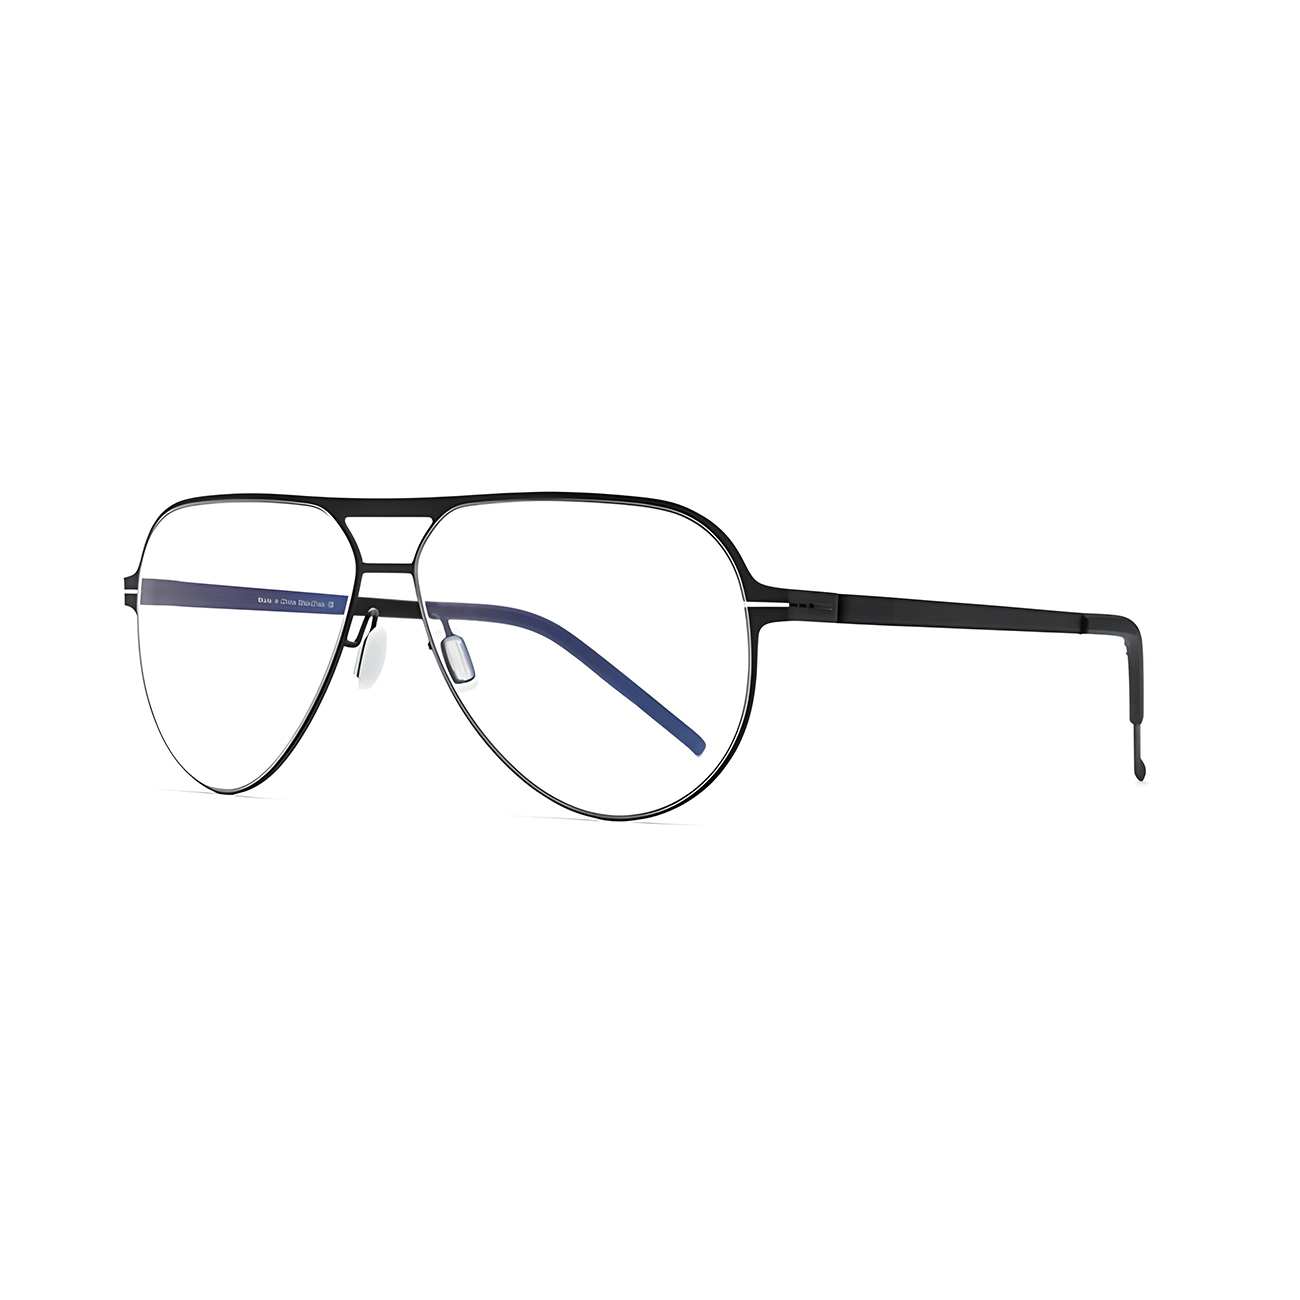 Titanium Screwless Design Aviator Eyeglass Weight: 10.5gr.